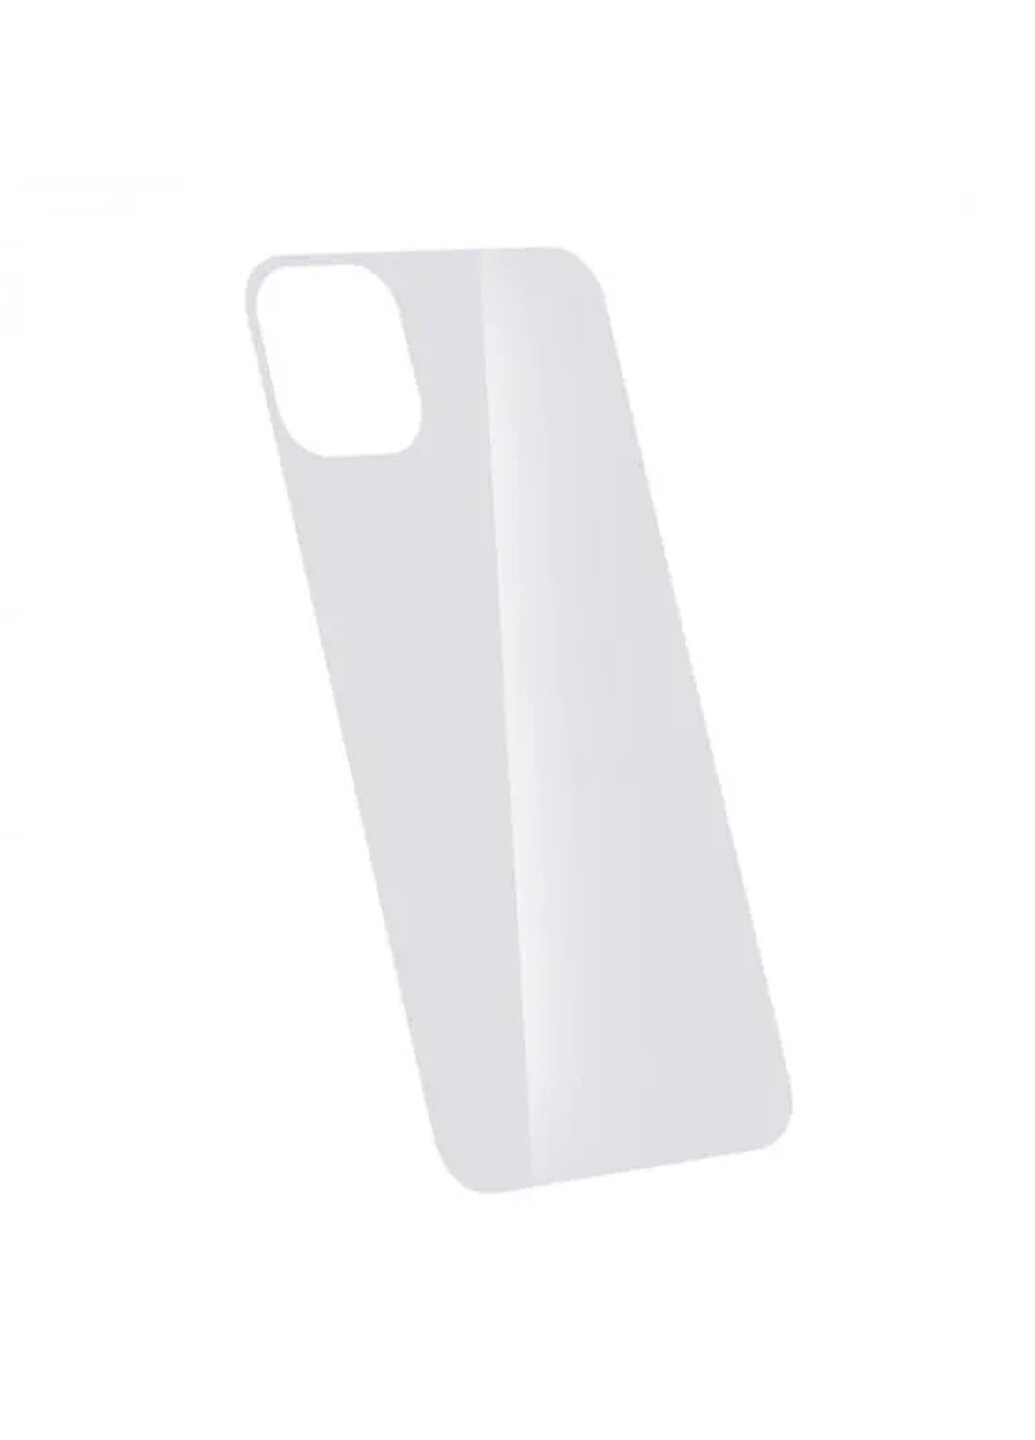 Стекло защитное на заднюю панель цветное глянцевое для iPhone 11 Pro Max White CAA (220513905)